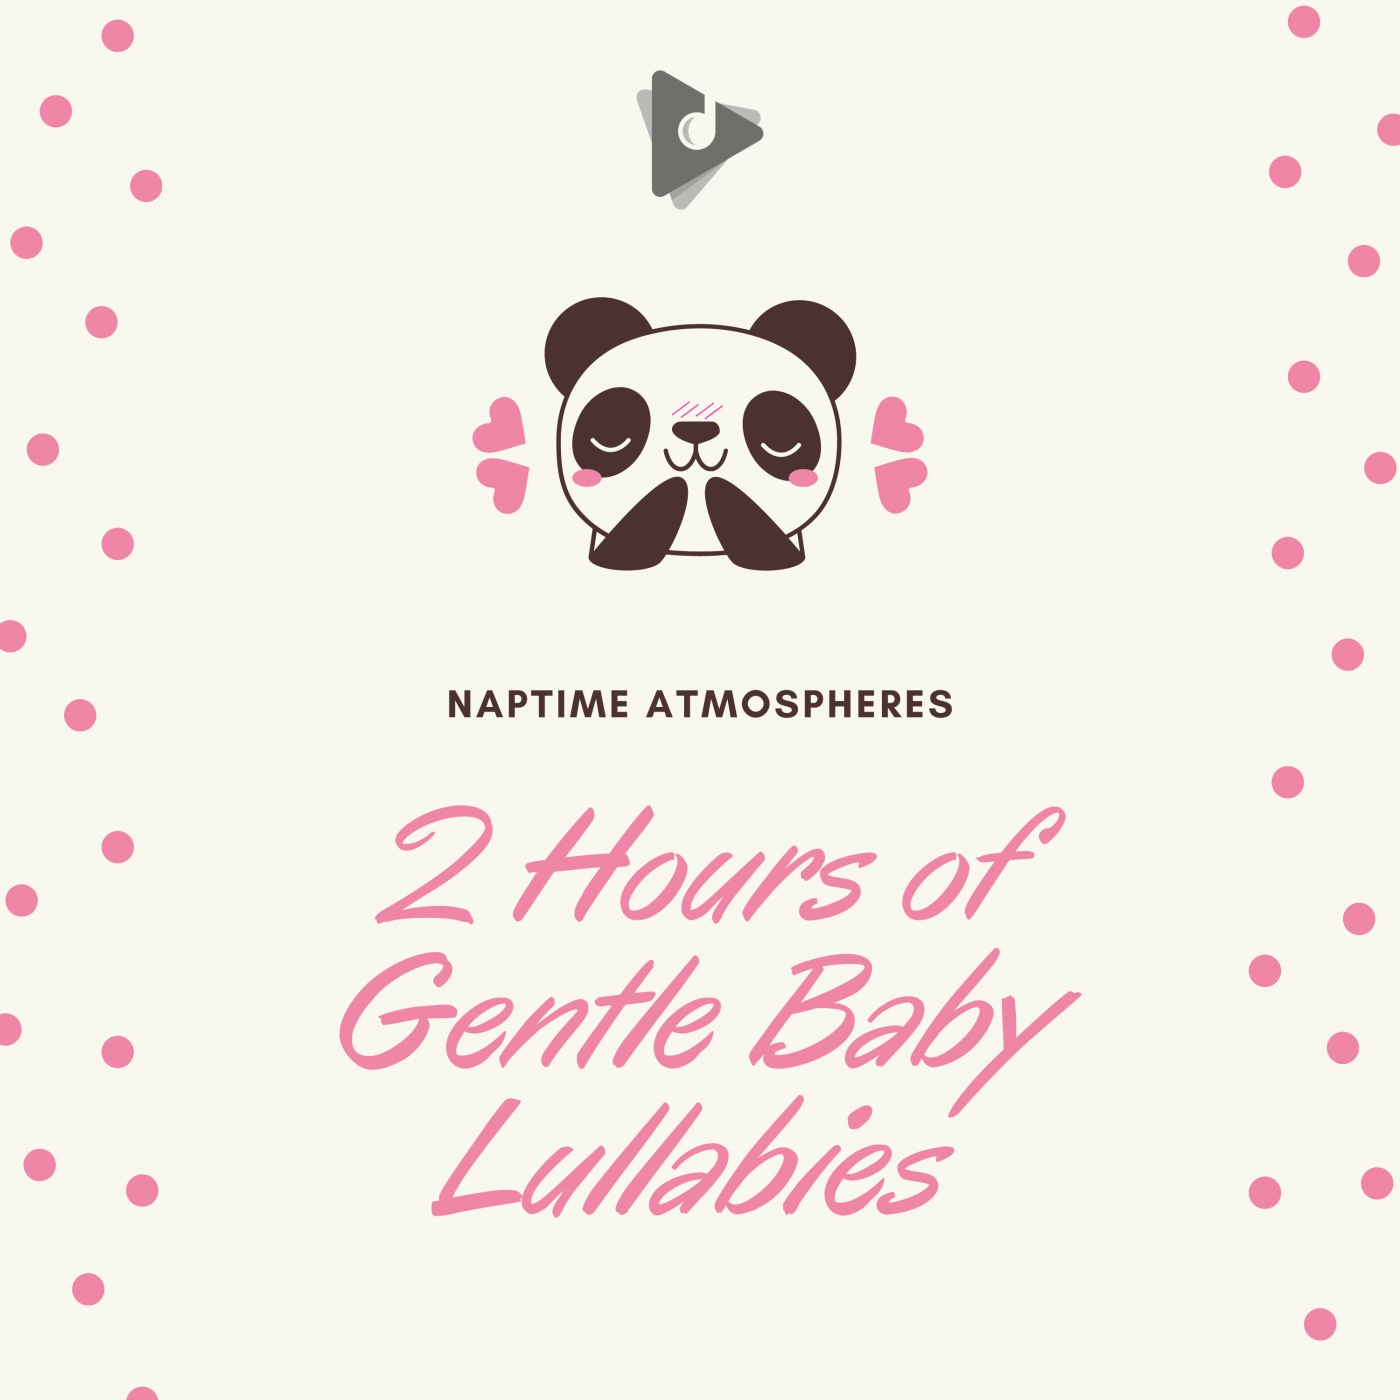 2 Hours of Gentle Baby Lullabies